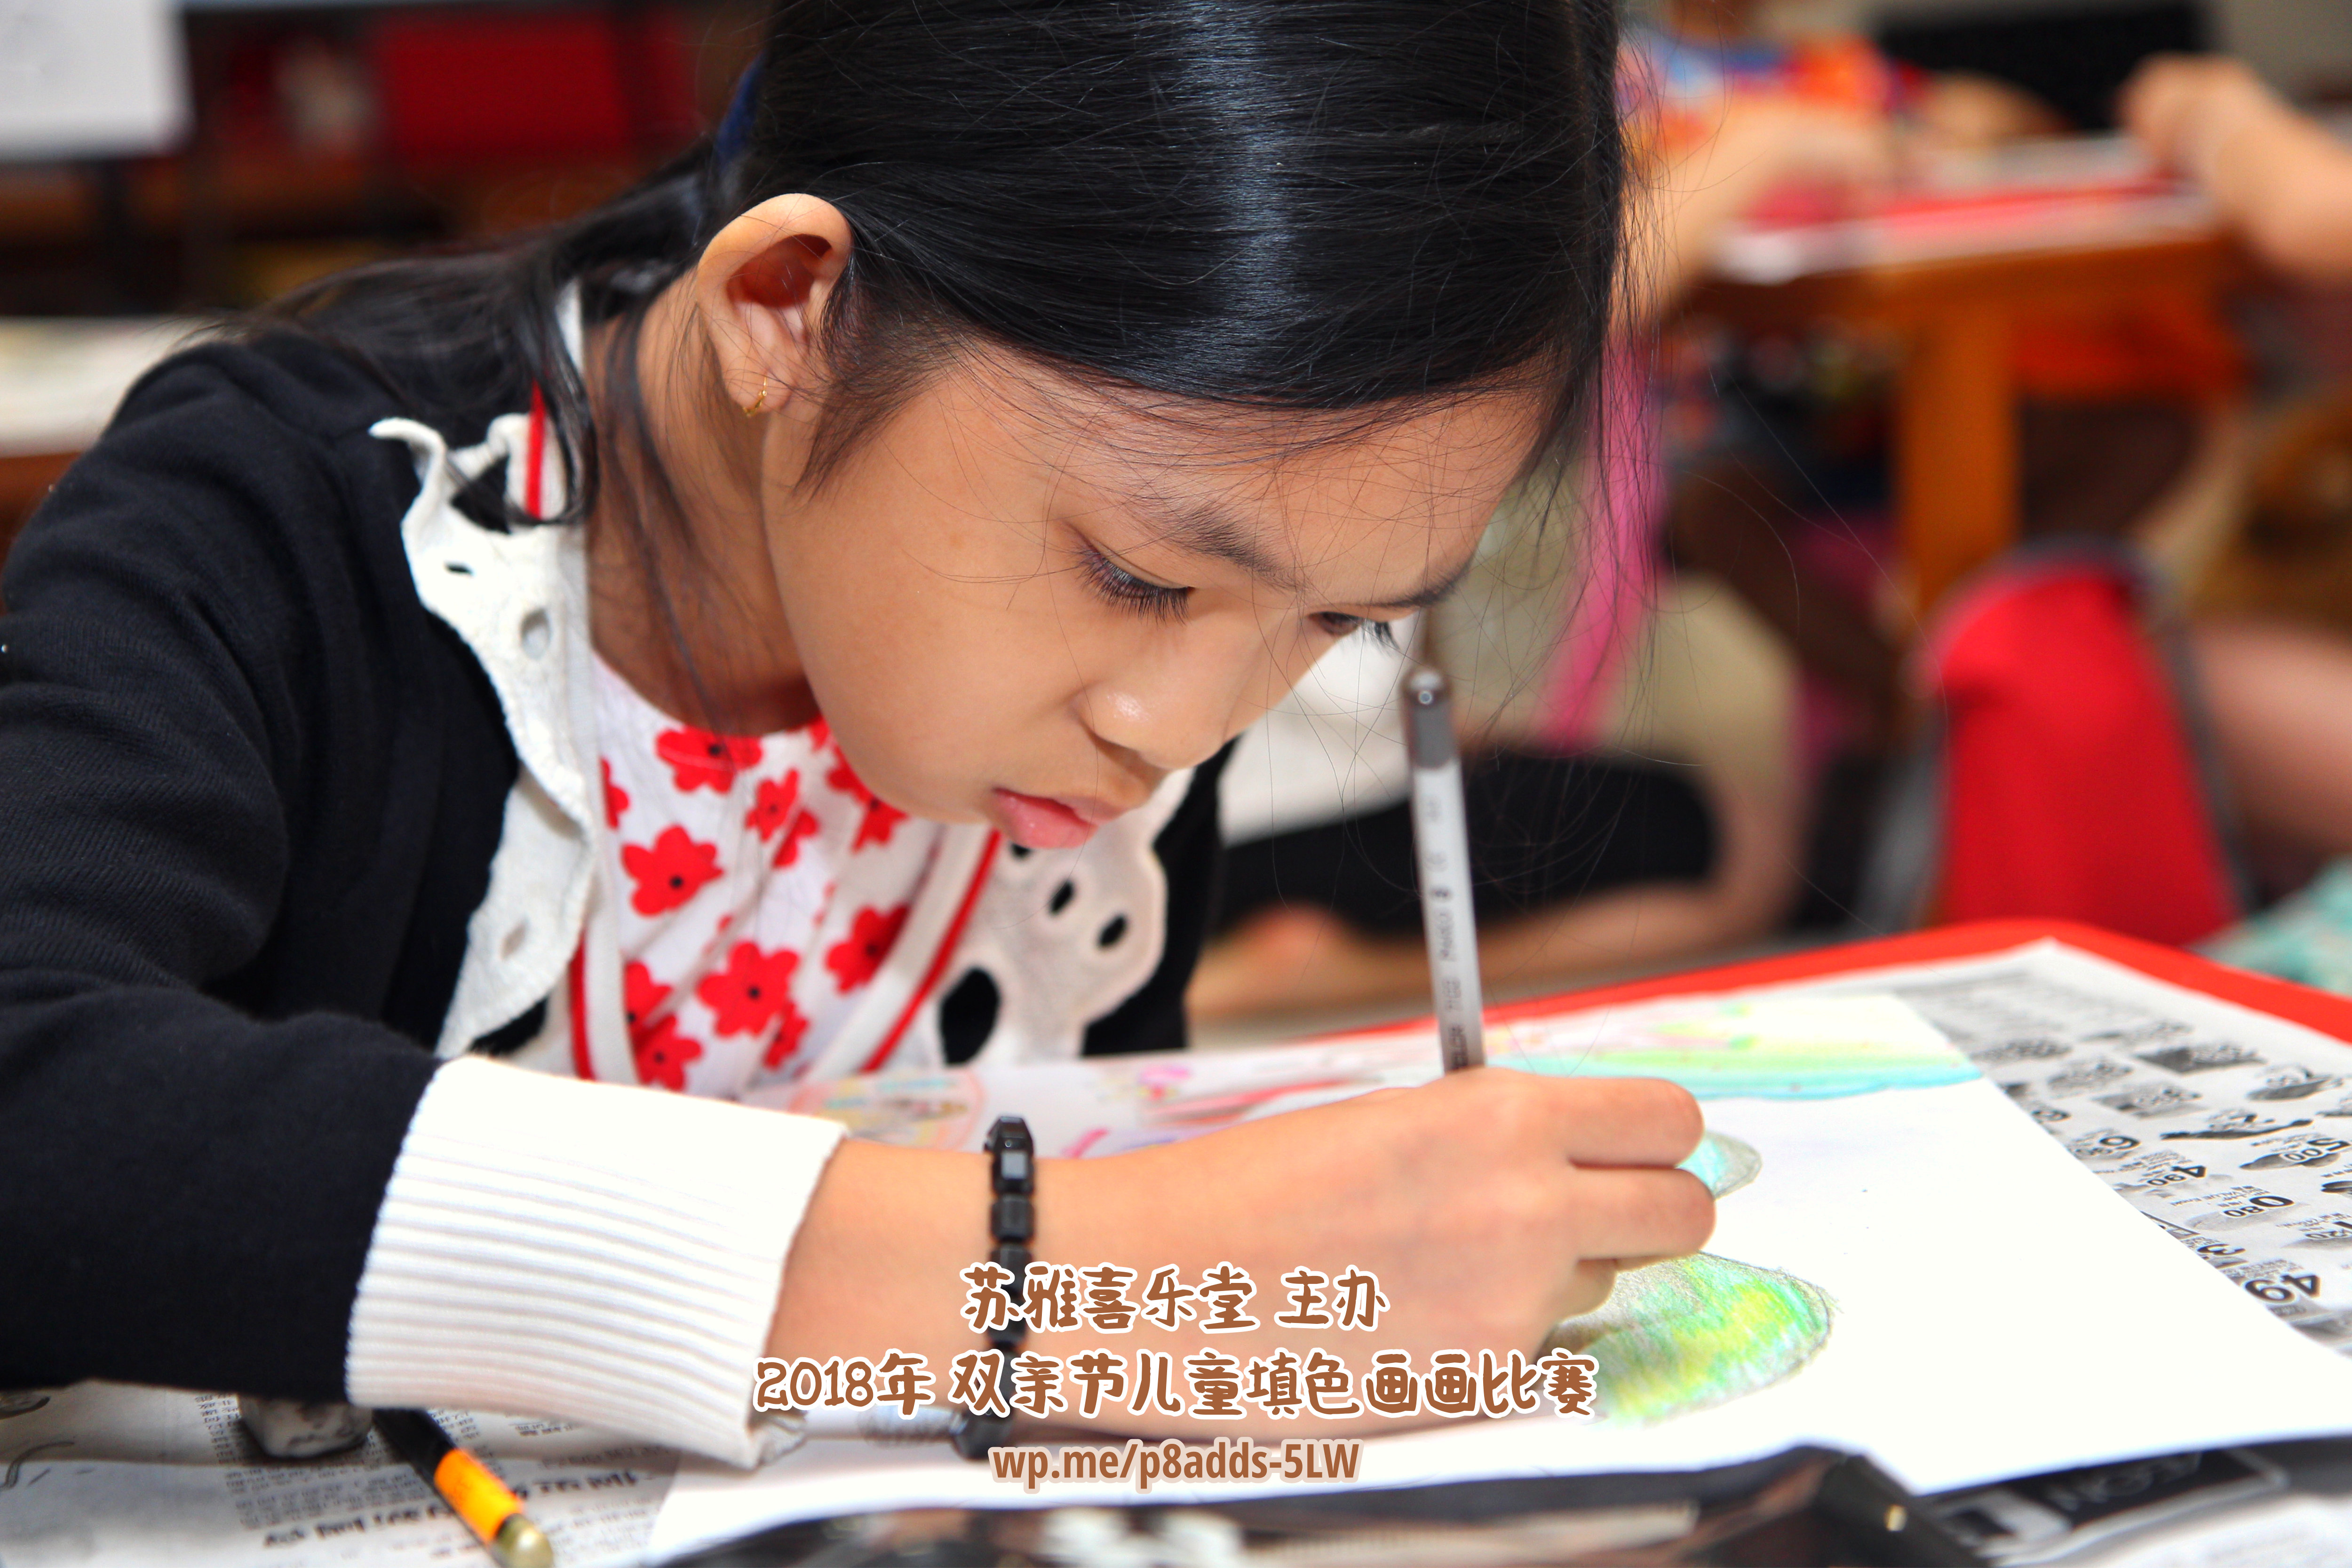 Batu Pahat Gereja Joy Soga Colouring Contest 苏雅喜乐堂主办2018年 峇株巴辖双亲节儿童填色画画比赛 培养儿童对彩色画画的兴趣 发掘美术的潜能 C1-49